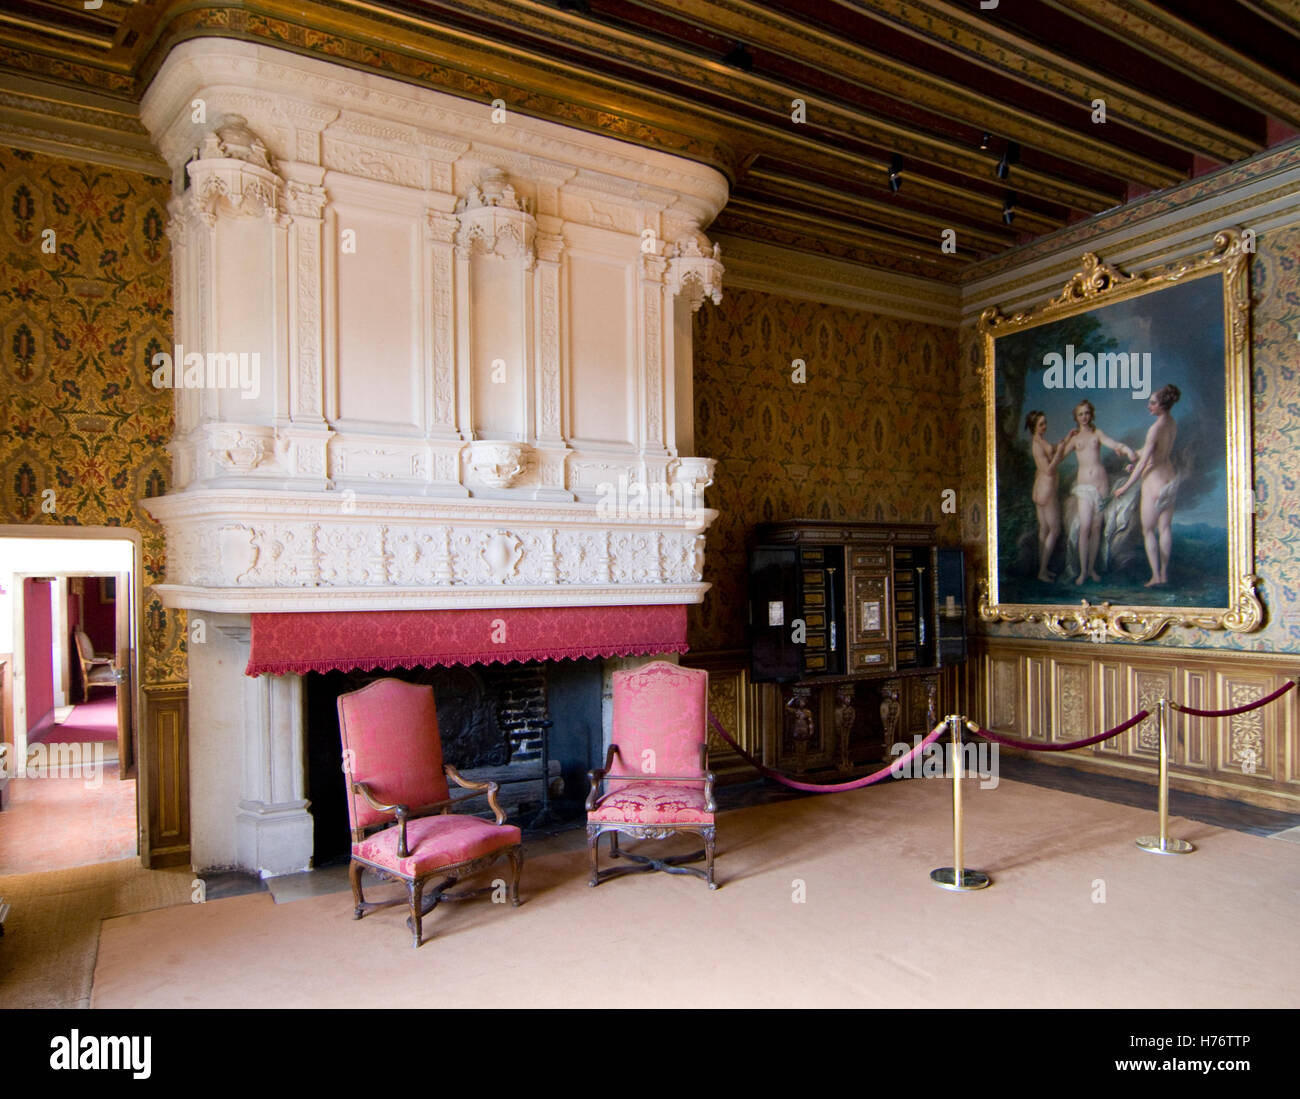 Kamin, 2 Stühle Gemälde und im Cahteau Chenonceau ; twi chaires dans fireplase énorme et la peinture dans la visite du château de Chenonceau Banque D'Images